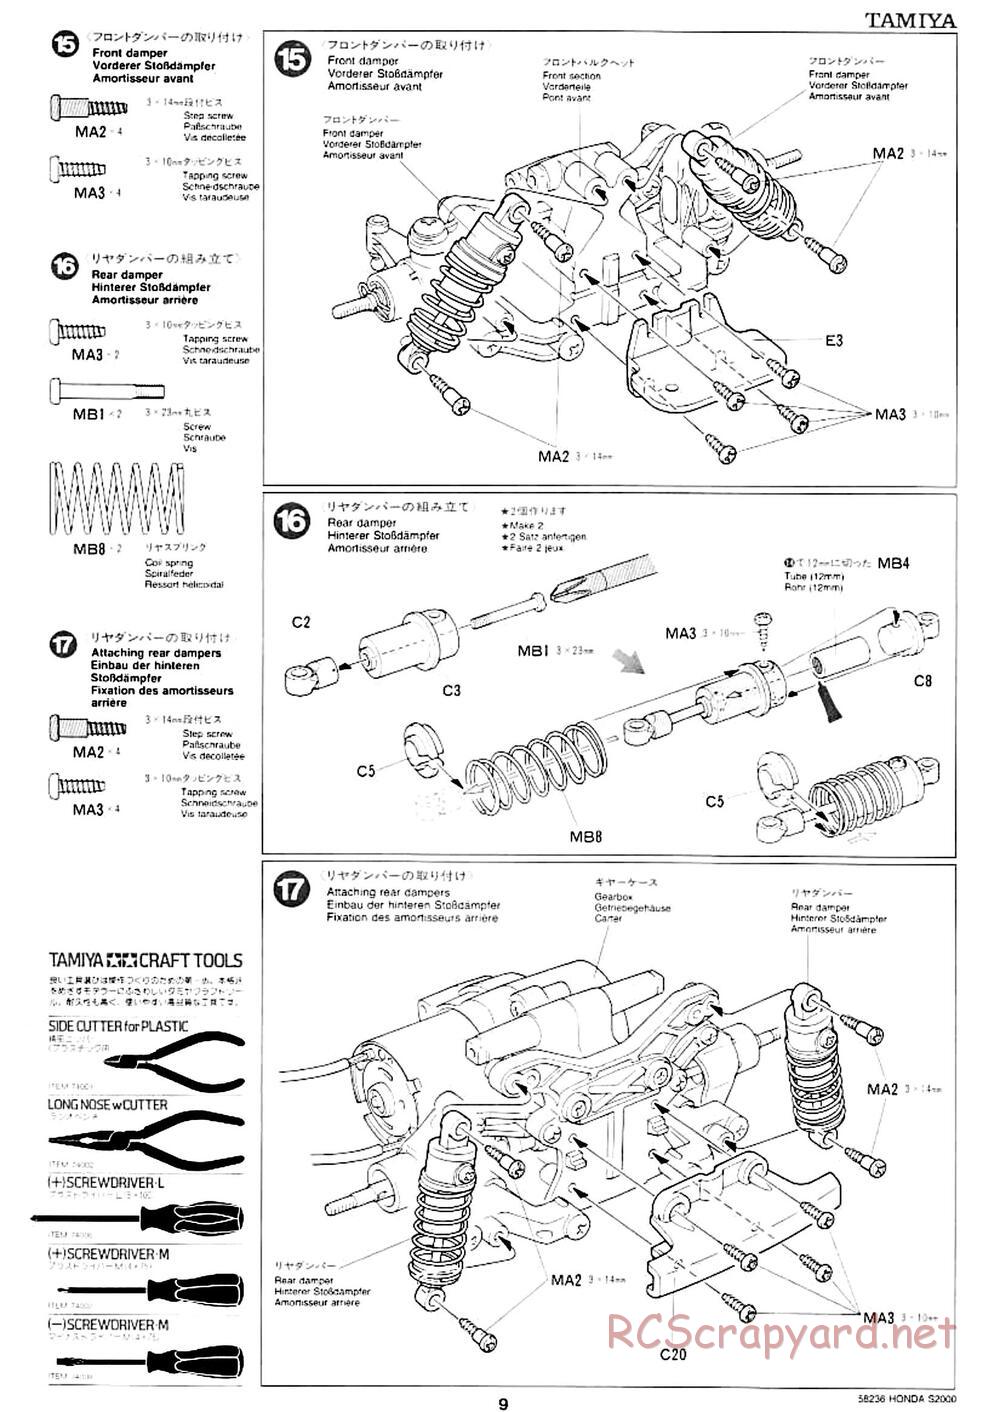 Tamiya - Honda S2000 - M04L Chassis - Manual - Page 7